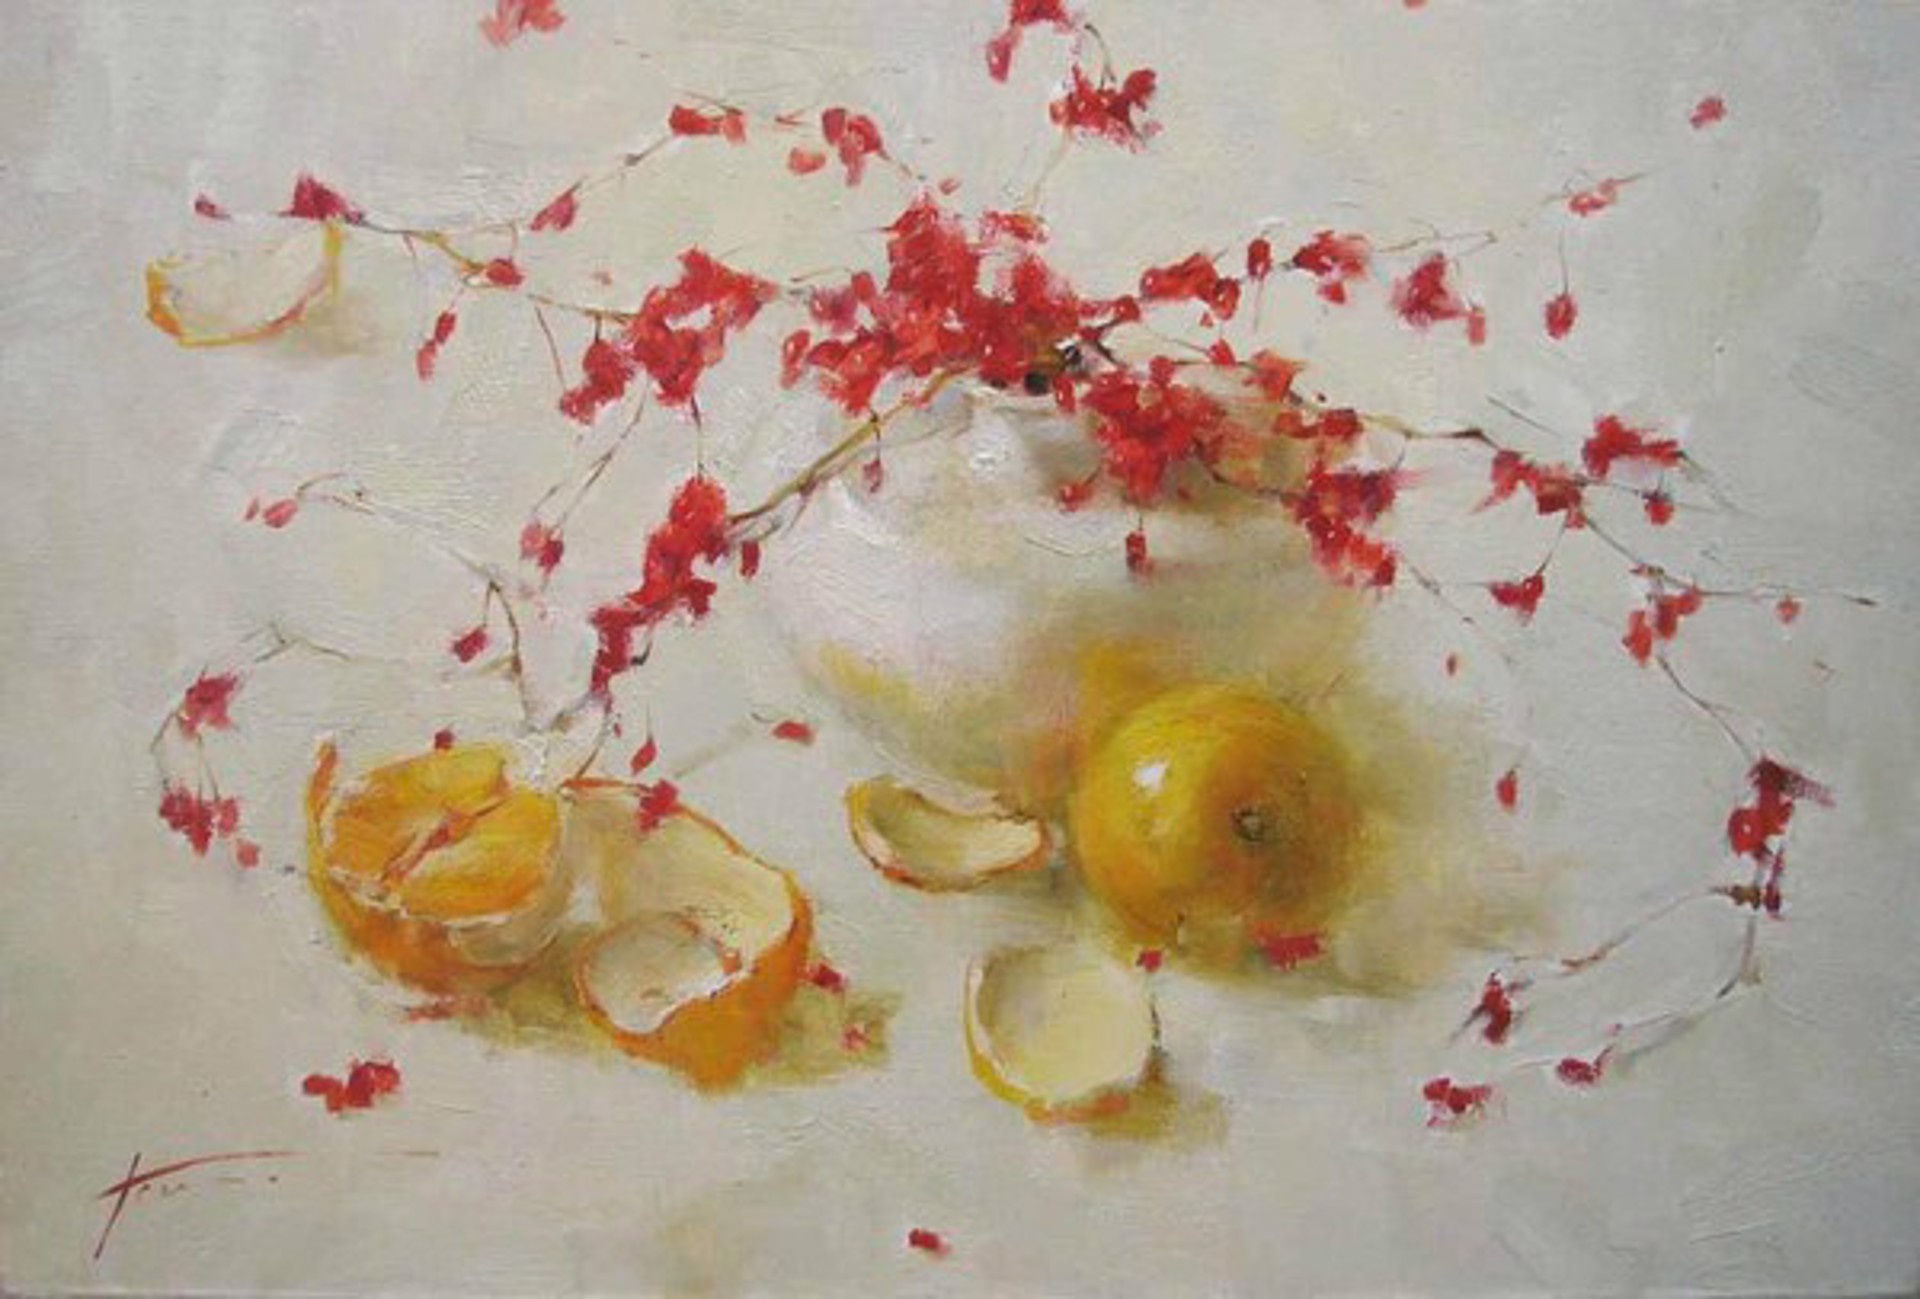 Red Berries with Oranges by Yana Golubyatnikova